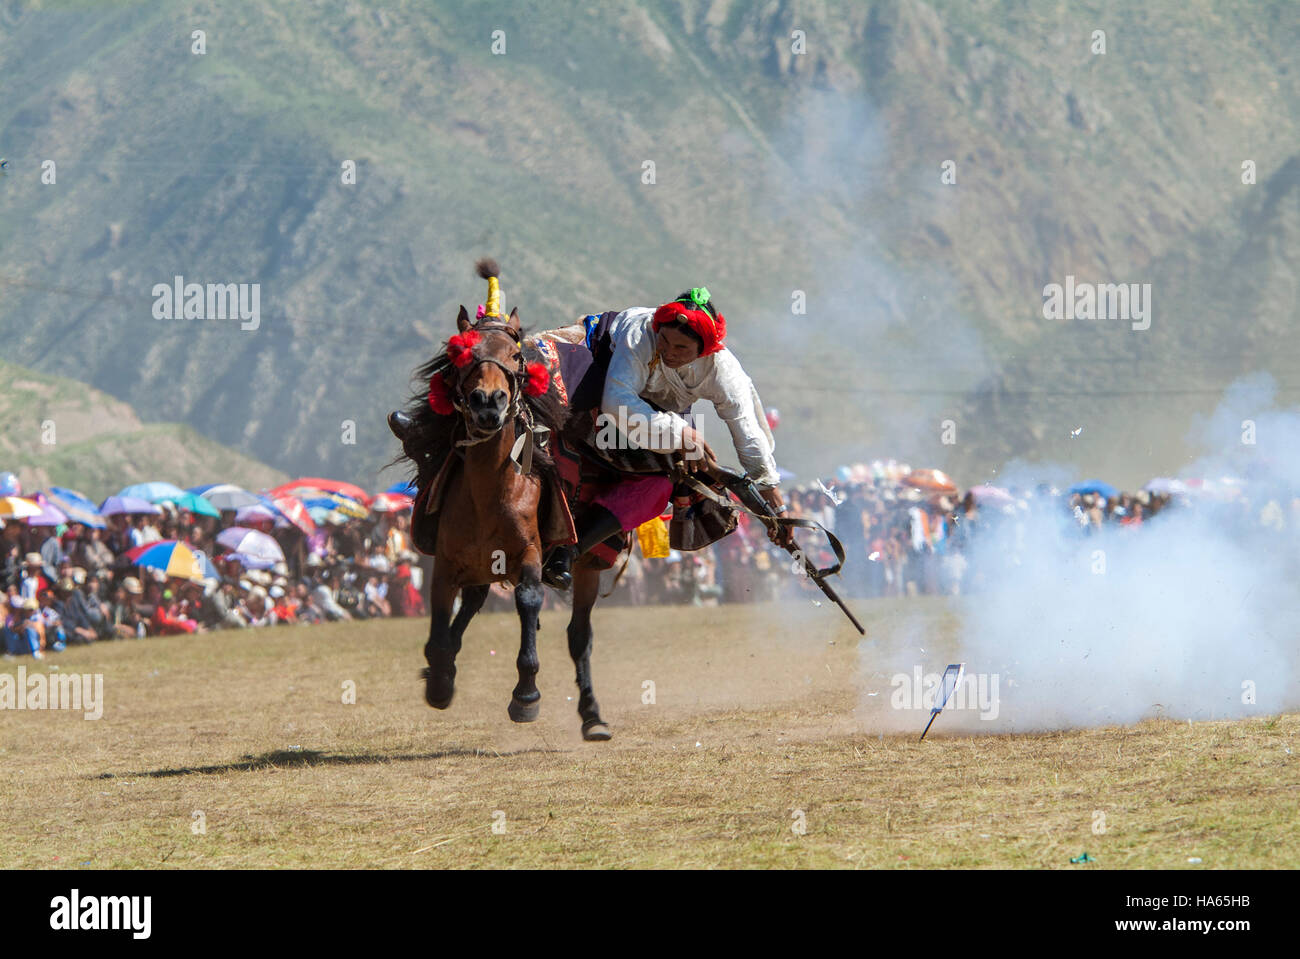 Khampa horseman spara a pezzi di carta con un blocco di pietra focaia pistola dal dorso di un cavallo al galoppo a Yushu Horse Racing Festival. Qinghai, Cina. Foto Stock